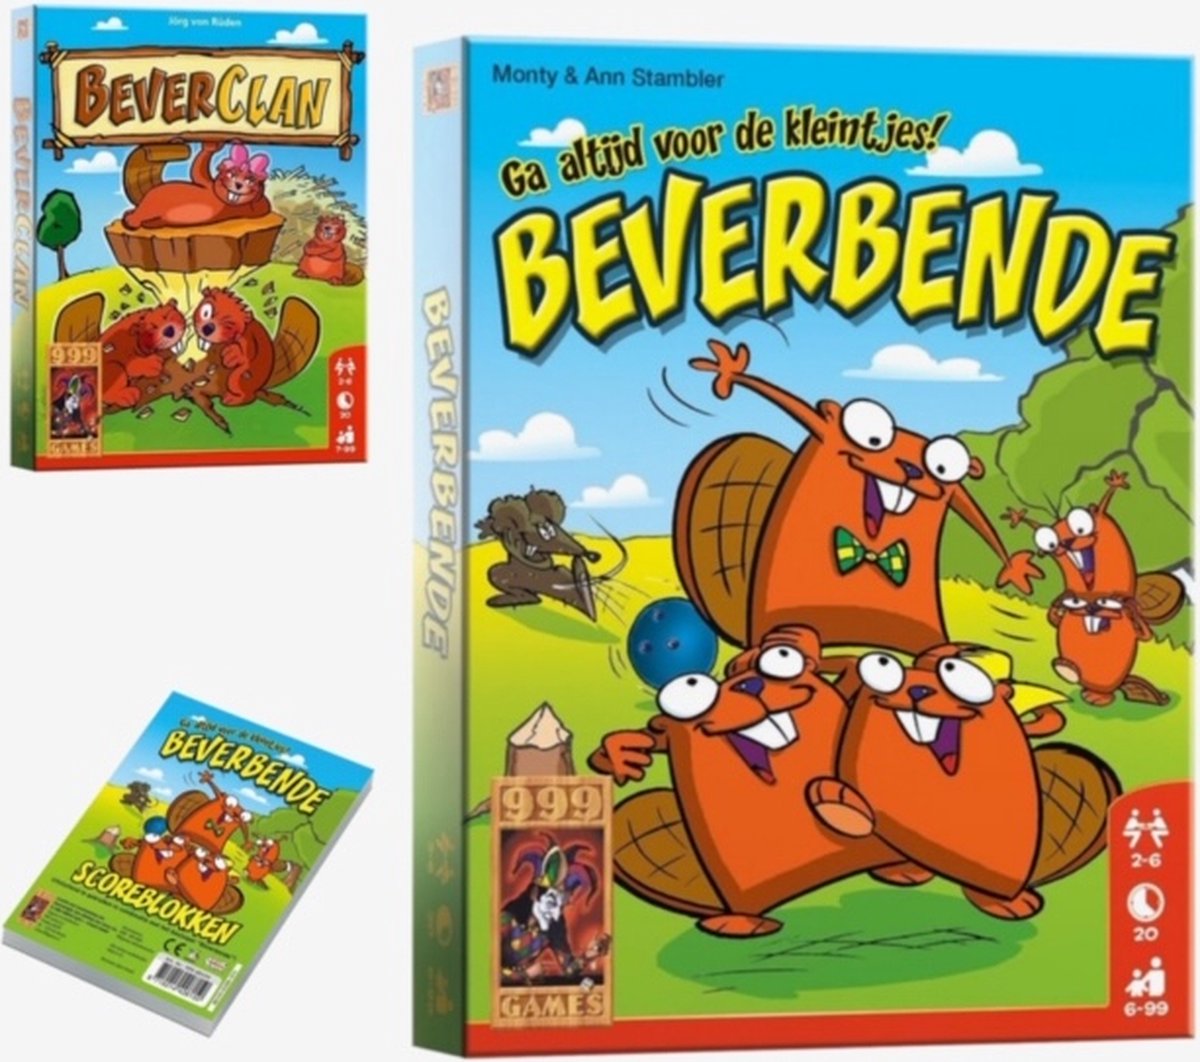 vis reactie weduwnaar Beverbende + Beverclan + Scoreblokken - 999 Games | Games | bol.com